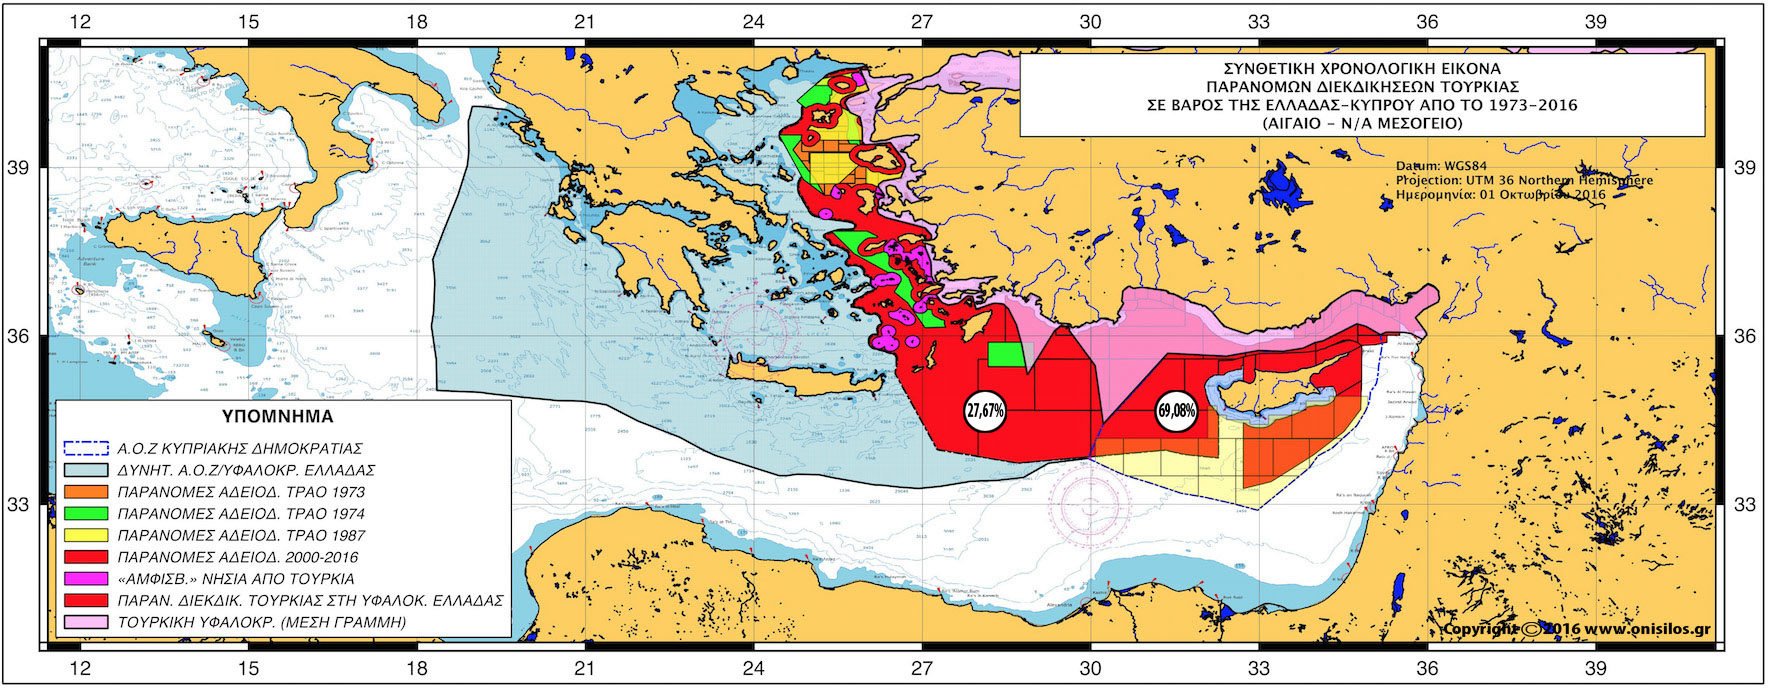 Γαλλικό IFRI: «Η τουρκική μέθοδος στη Μεσόγειο – Ο έλεγχος της Βόρειας Κύπρου»